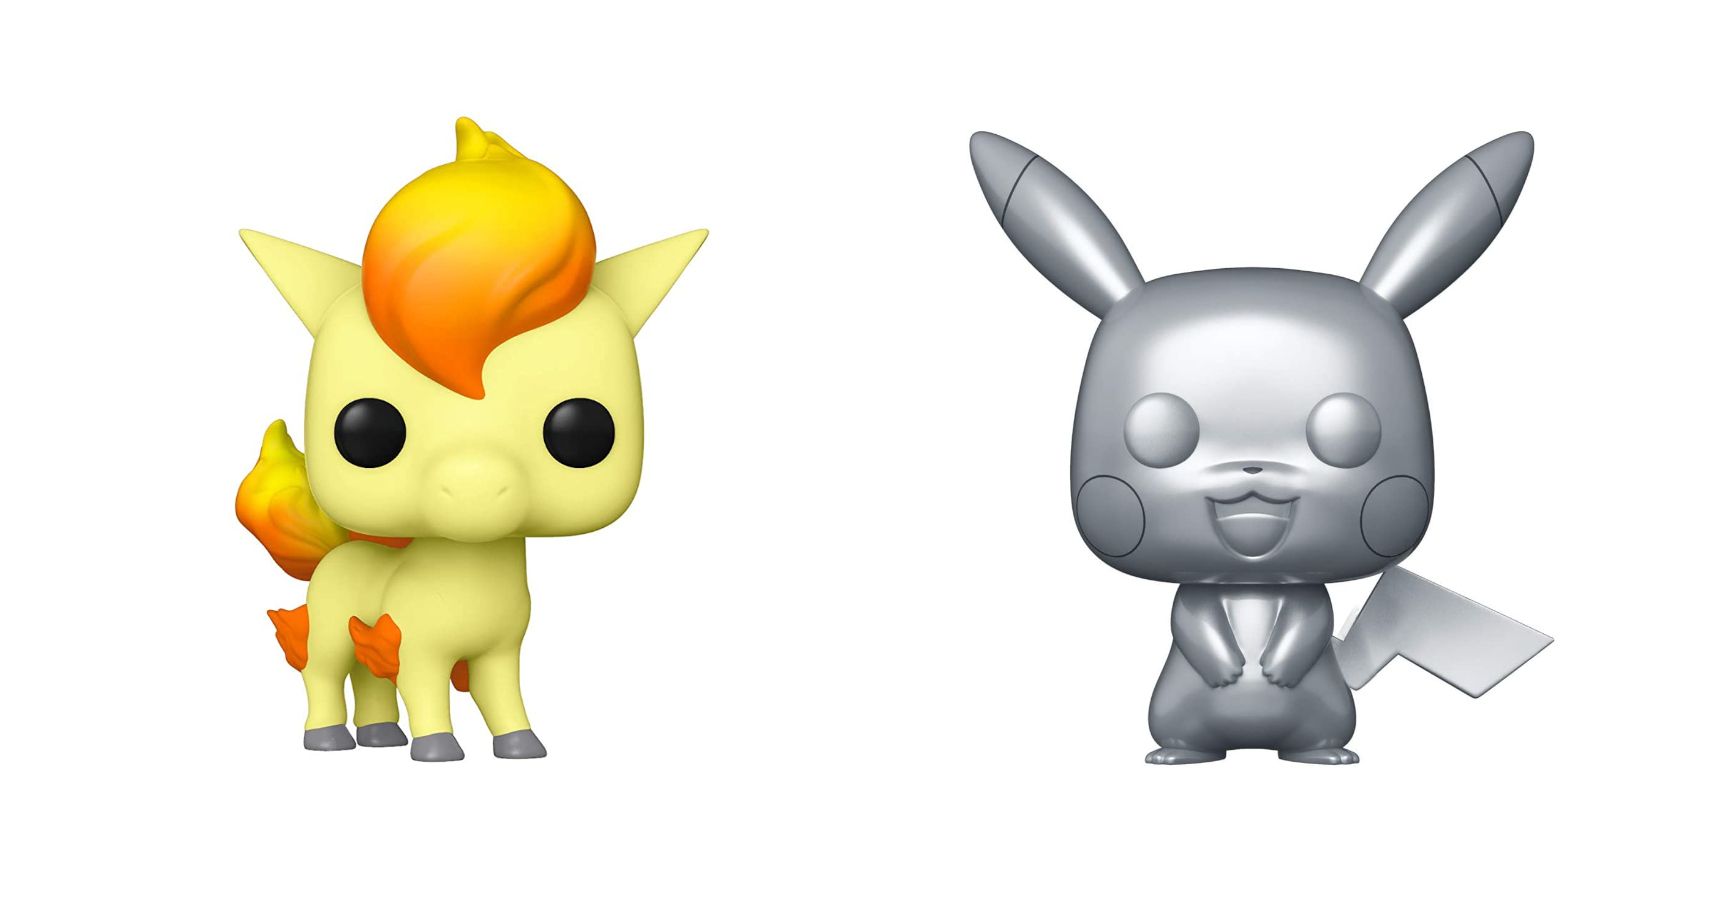 Ponyta 25th Anniversary Pikachu Pokemon Pop